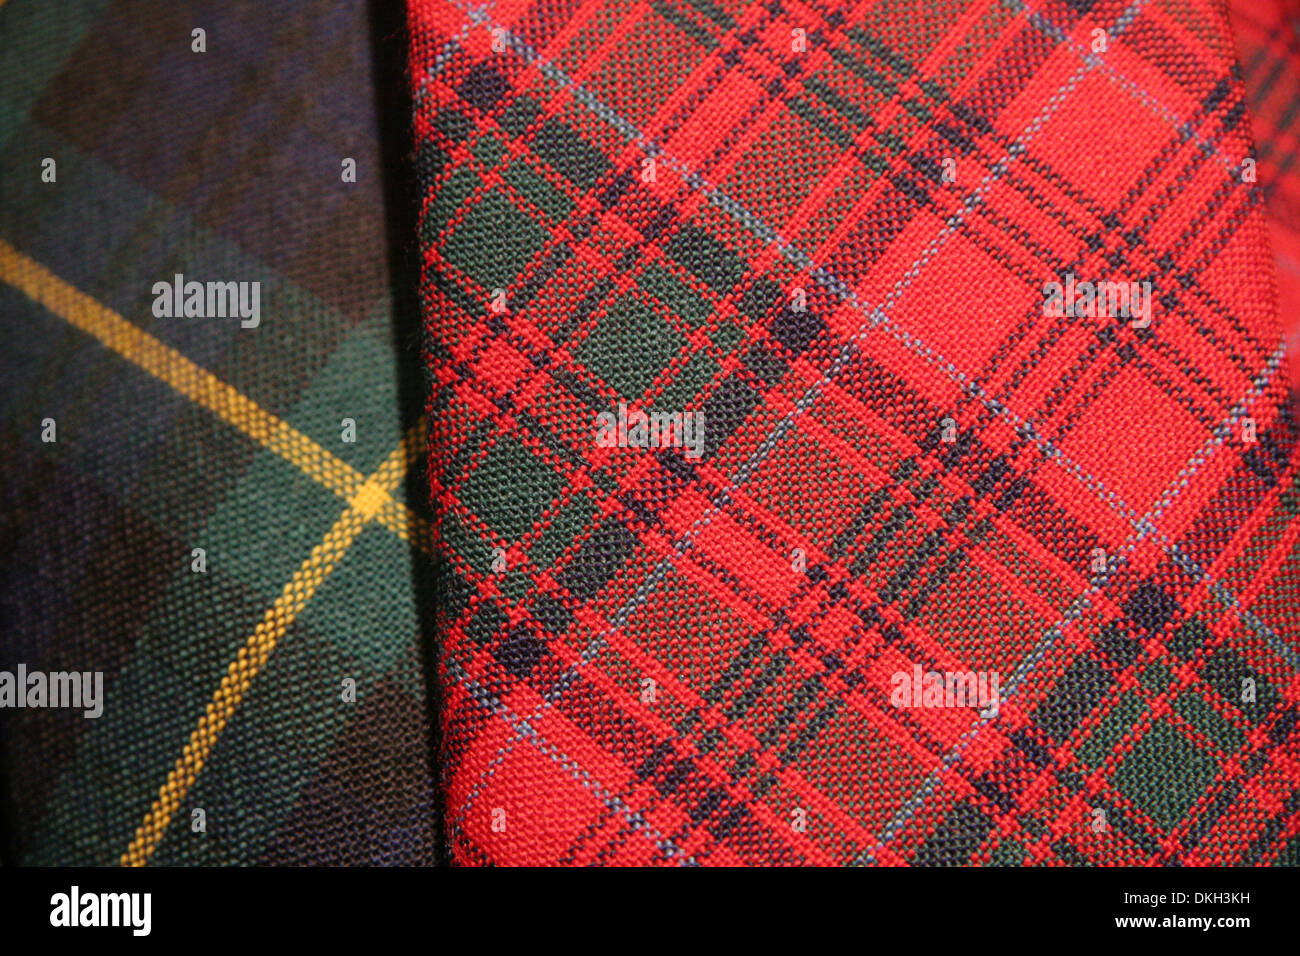 Close up de tissu tartan. Combinaison de rouges, verts, bleus et crème. Scotish traditionnellement représentant des clans, l'Écosse. Banque D'Images